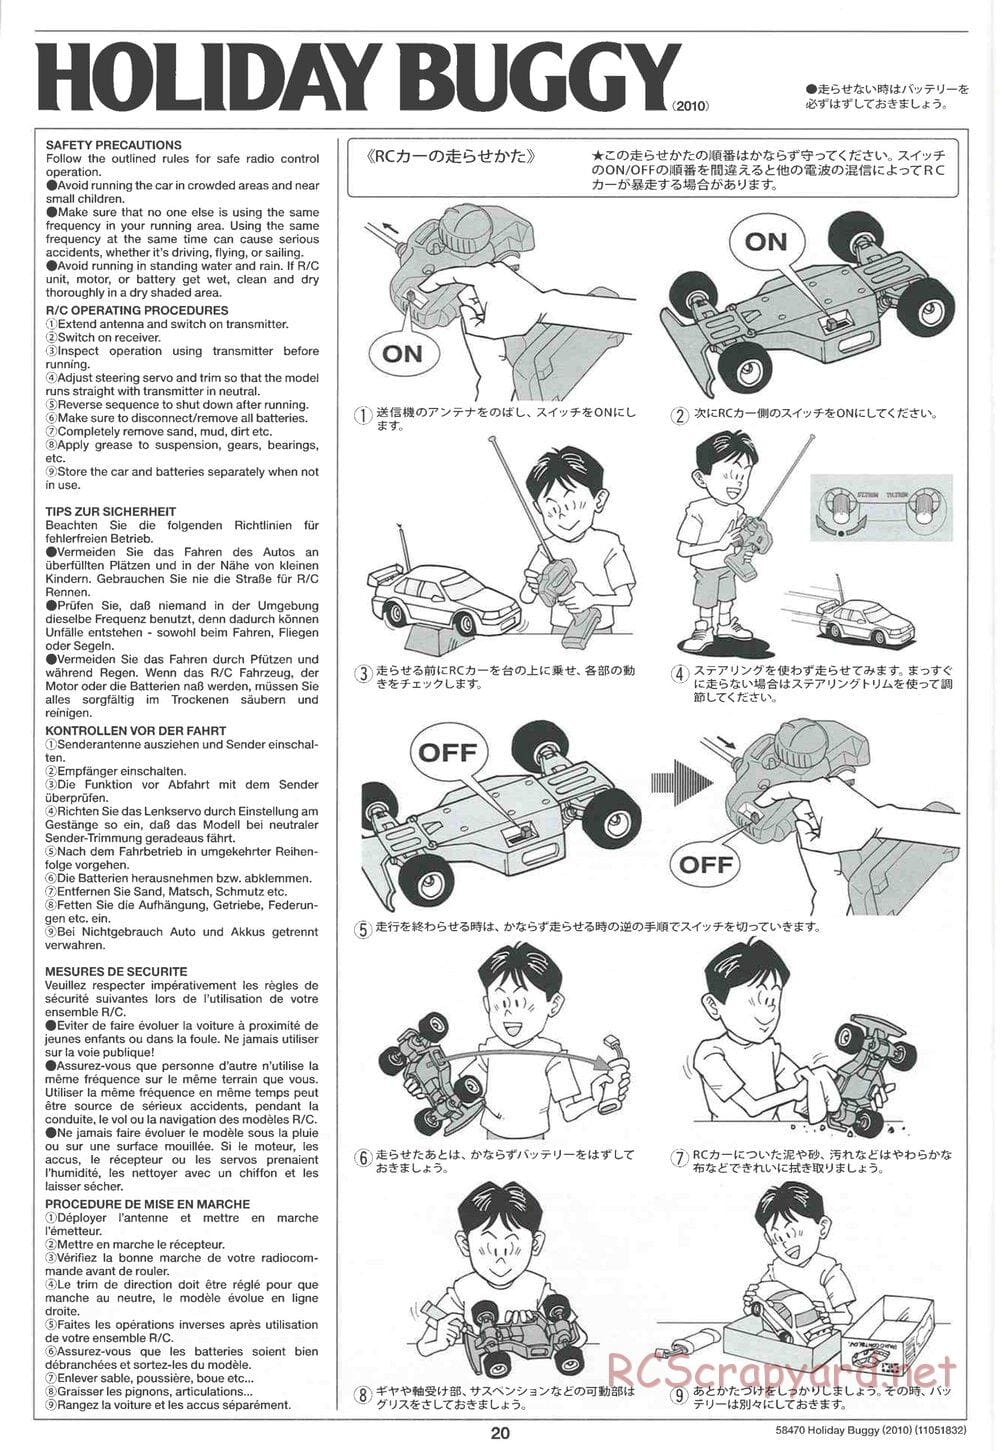 Tamiya - Holiday Buggy 2010 Chassis - Manual - Page 20